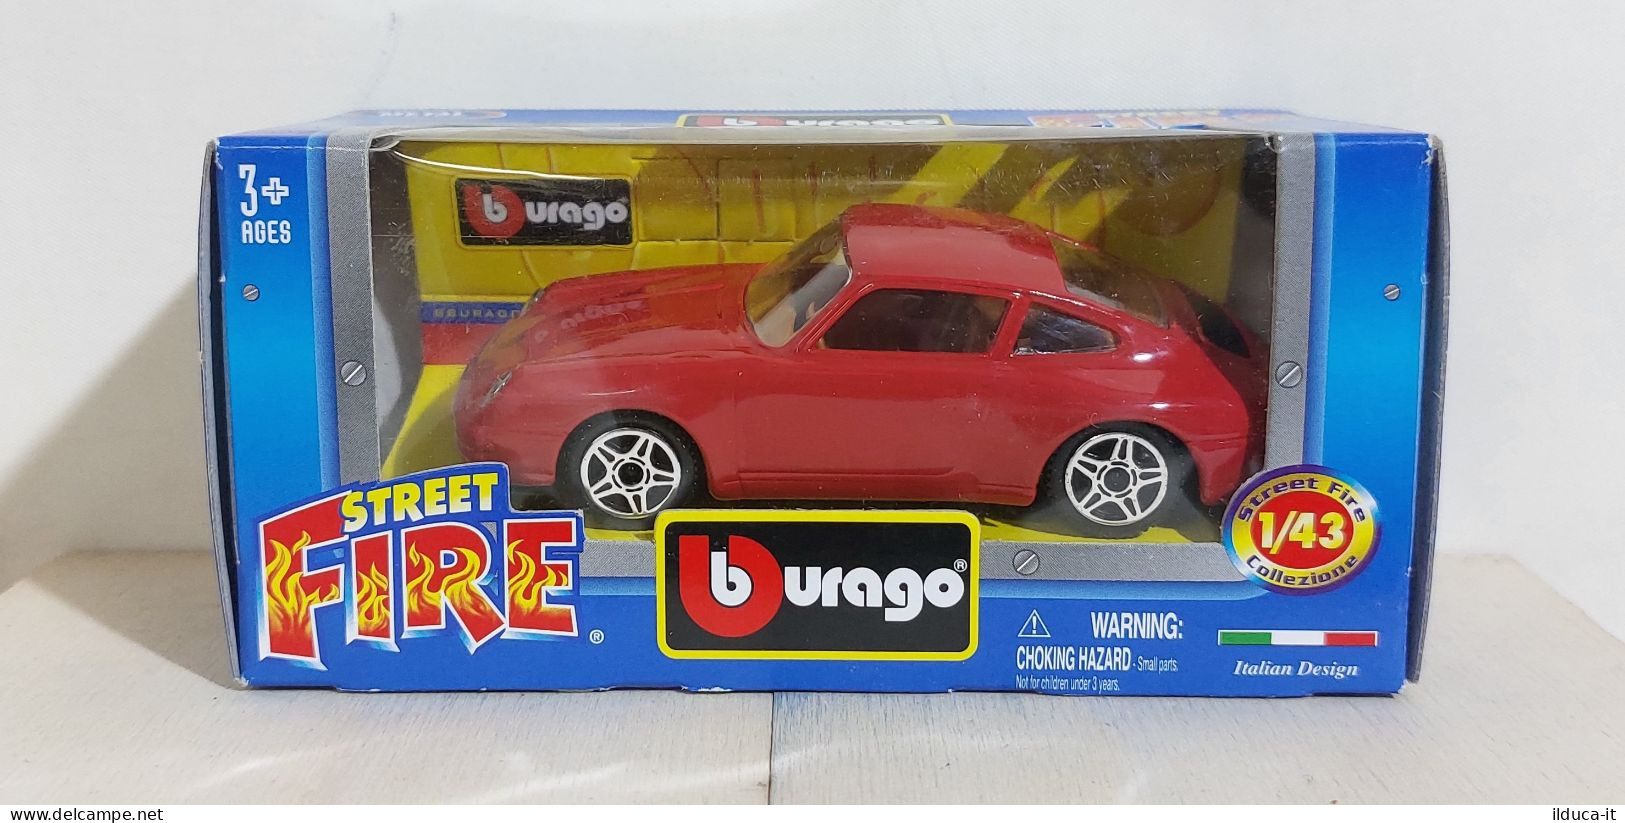 I116287 BURAGO 1/43 Serie Street Fire - Porsche 911 Carrera - Box - Burago